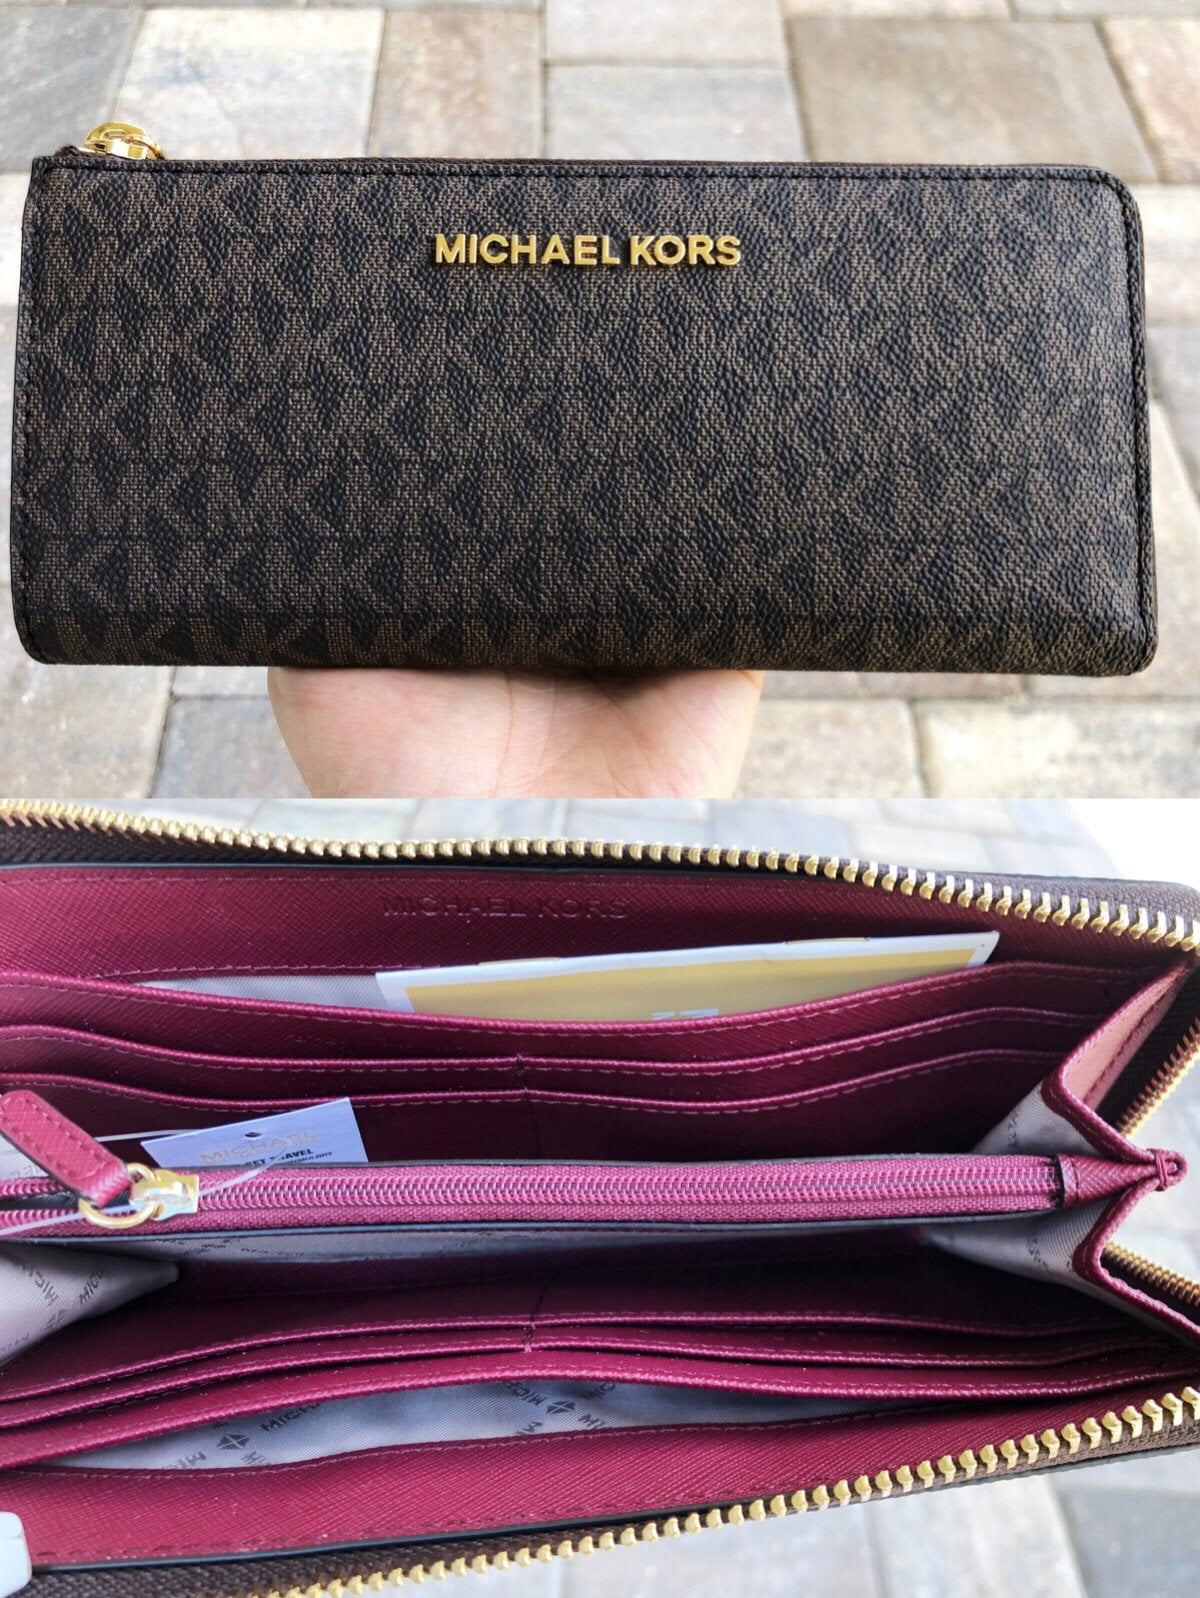 michael kors jet set zip around wallet